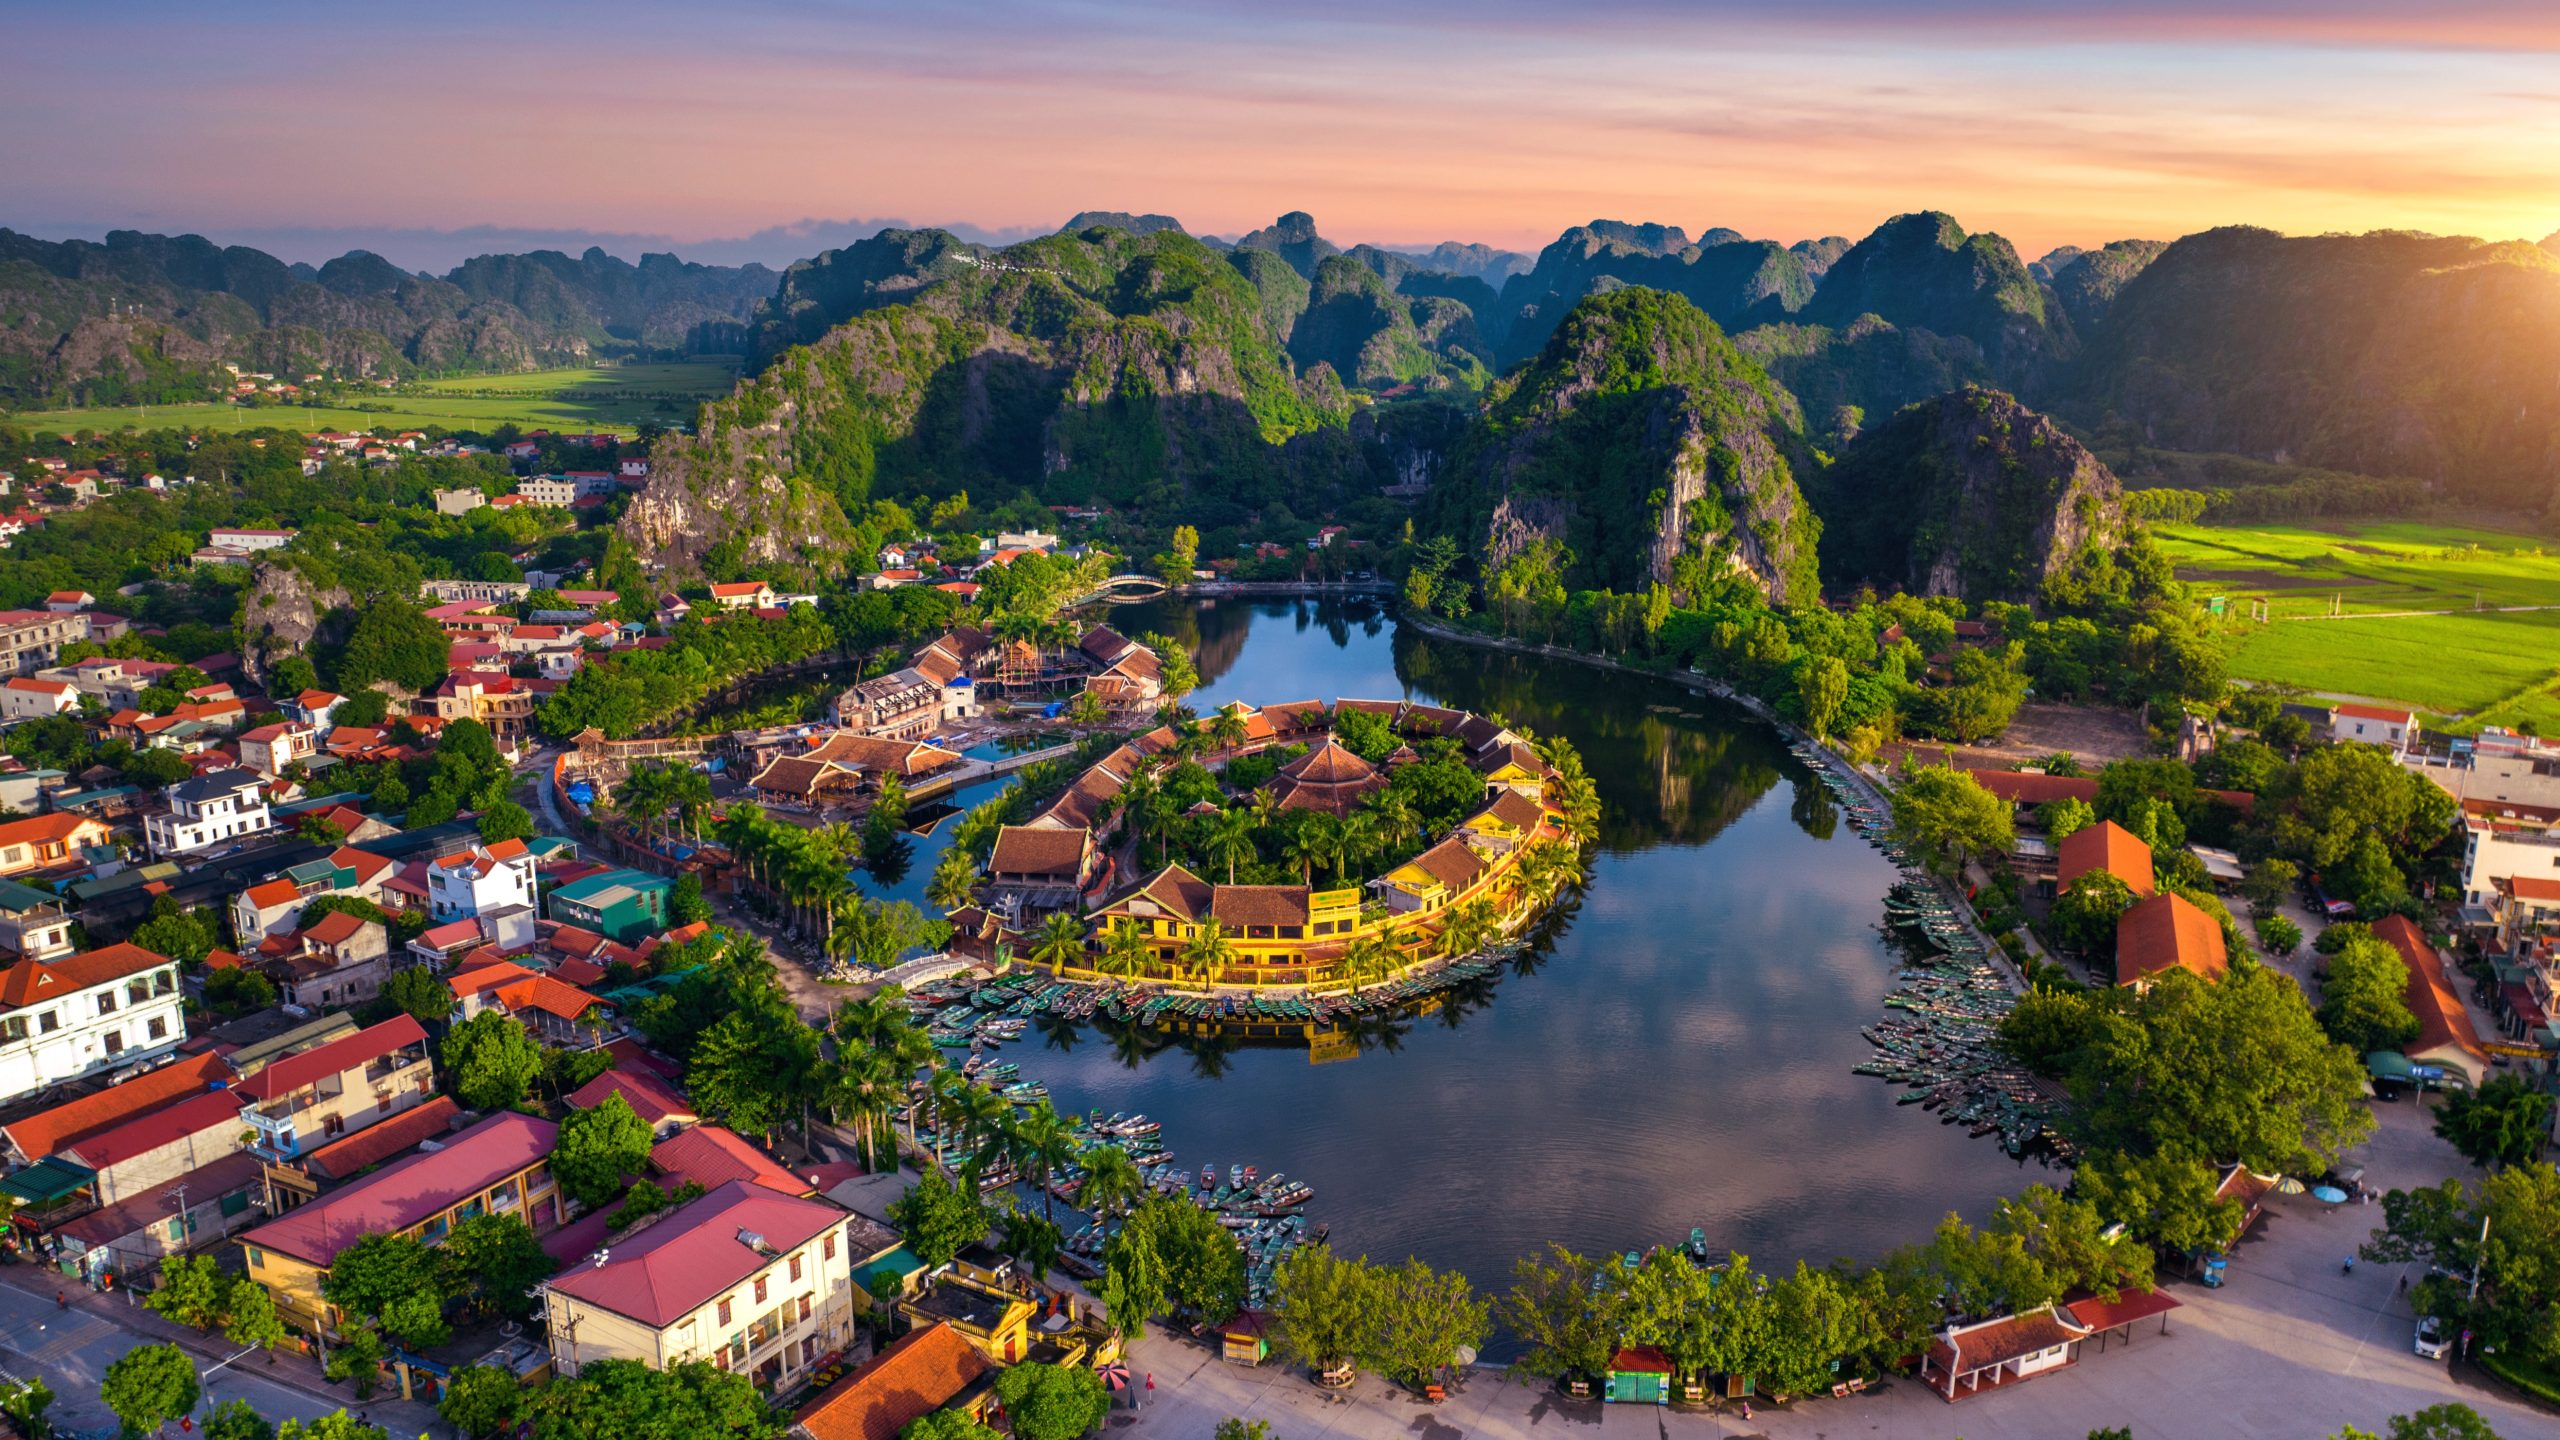 Aerial view of Tam coc at sunrise in Vietnam.